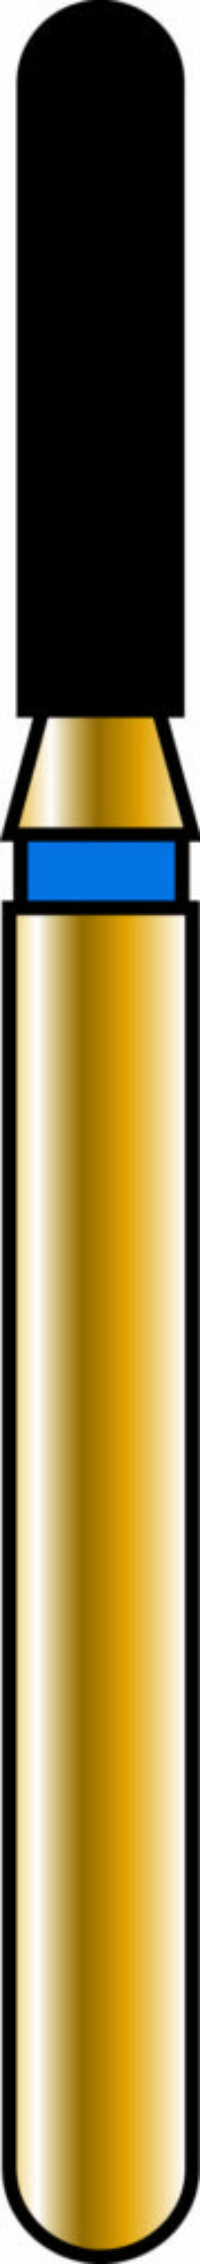 Round End Cylinder 14-6mm Gold Diamond Bur